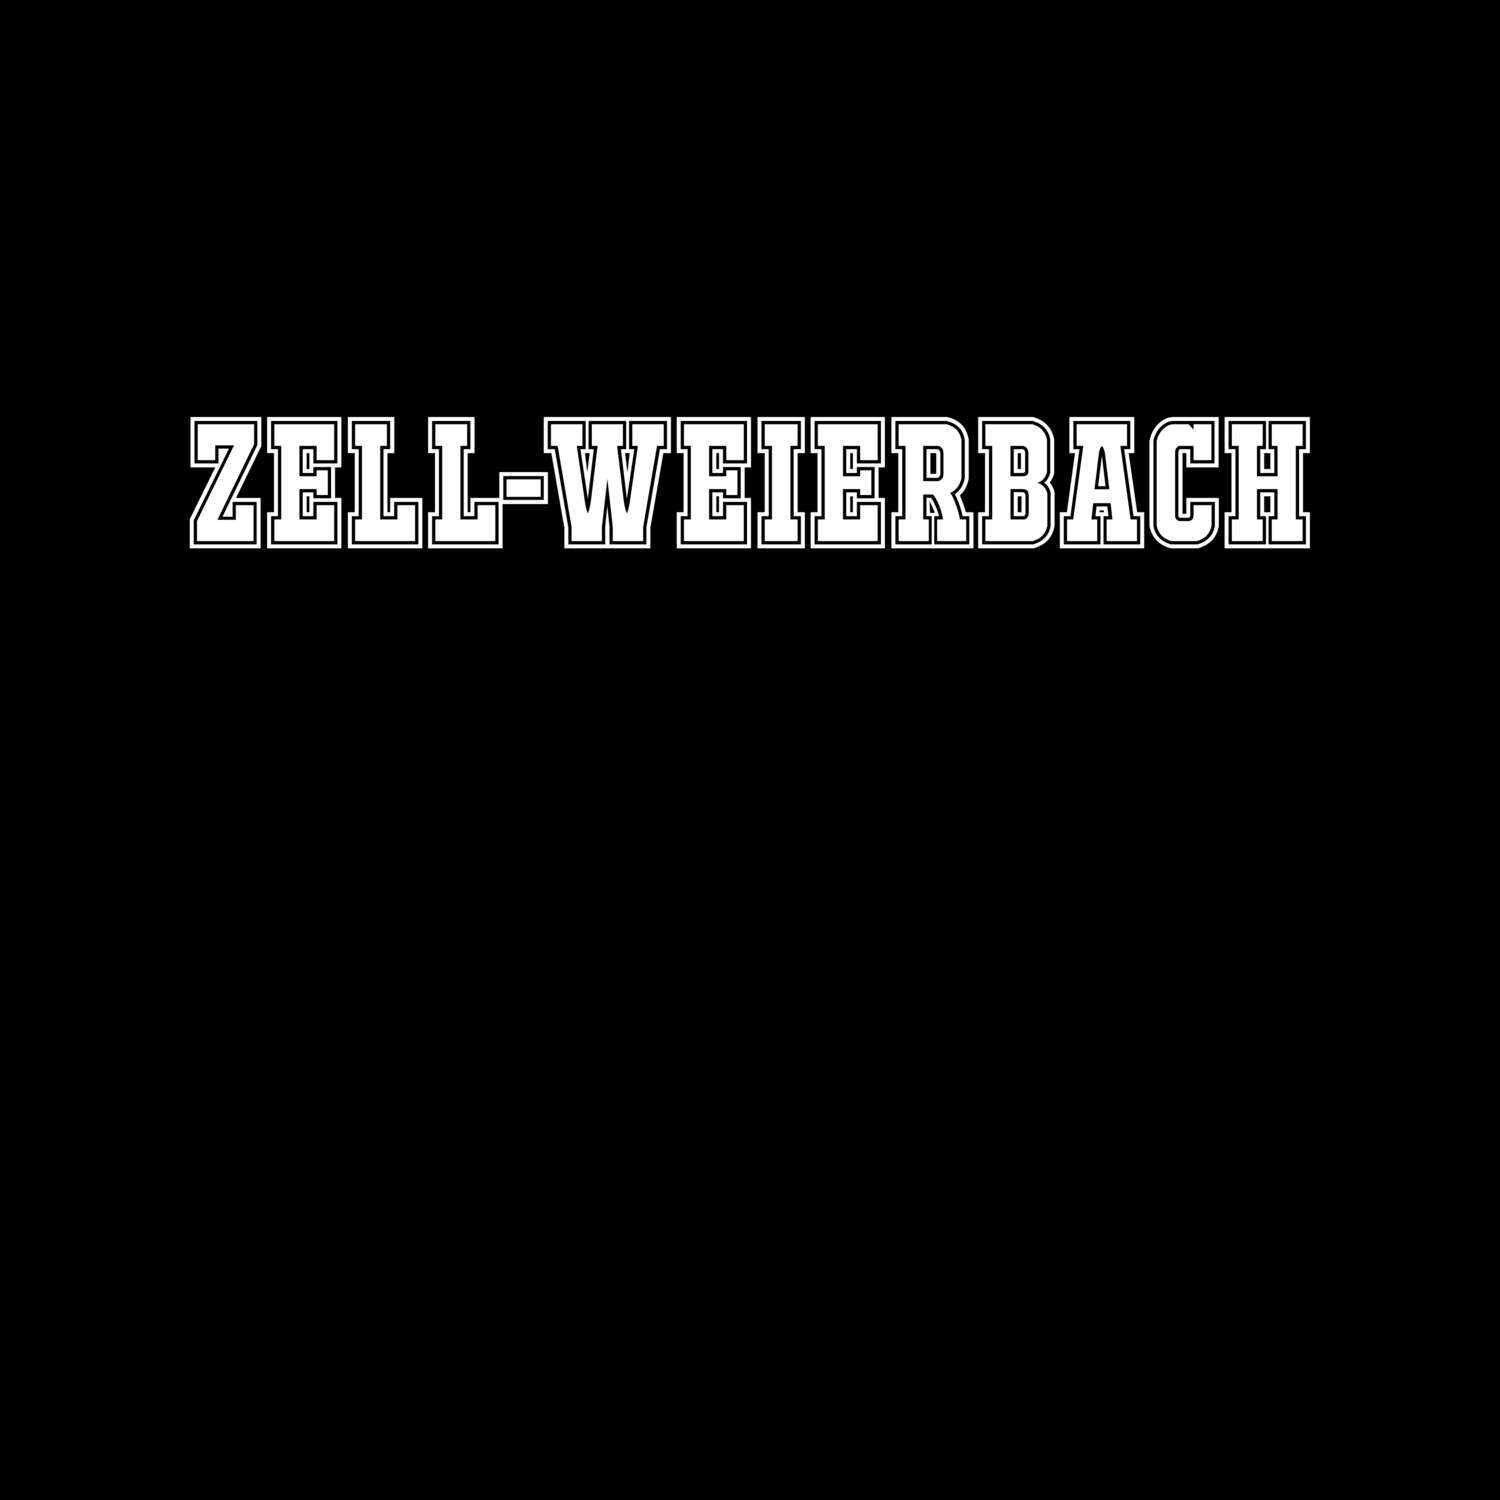 Zell-Weierbach T-Shirt »Classic«